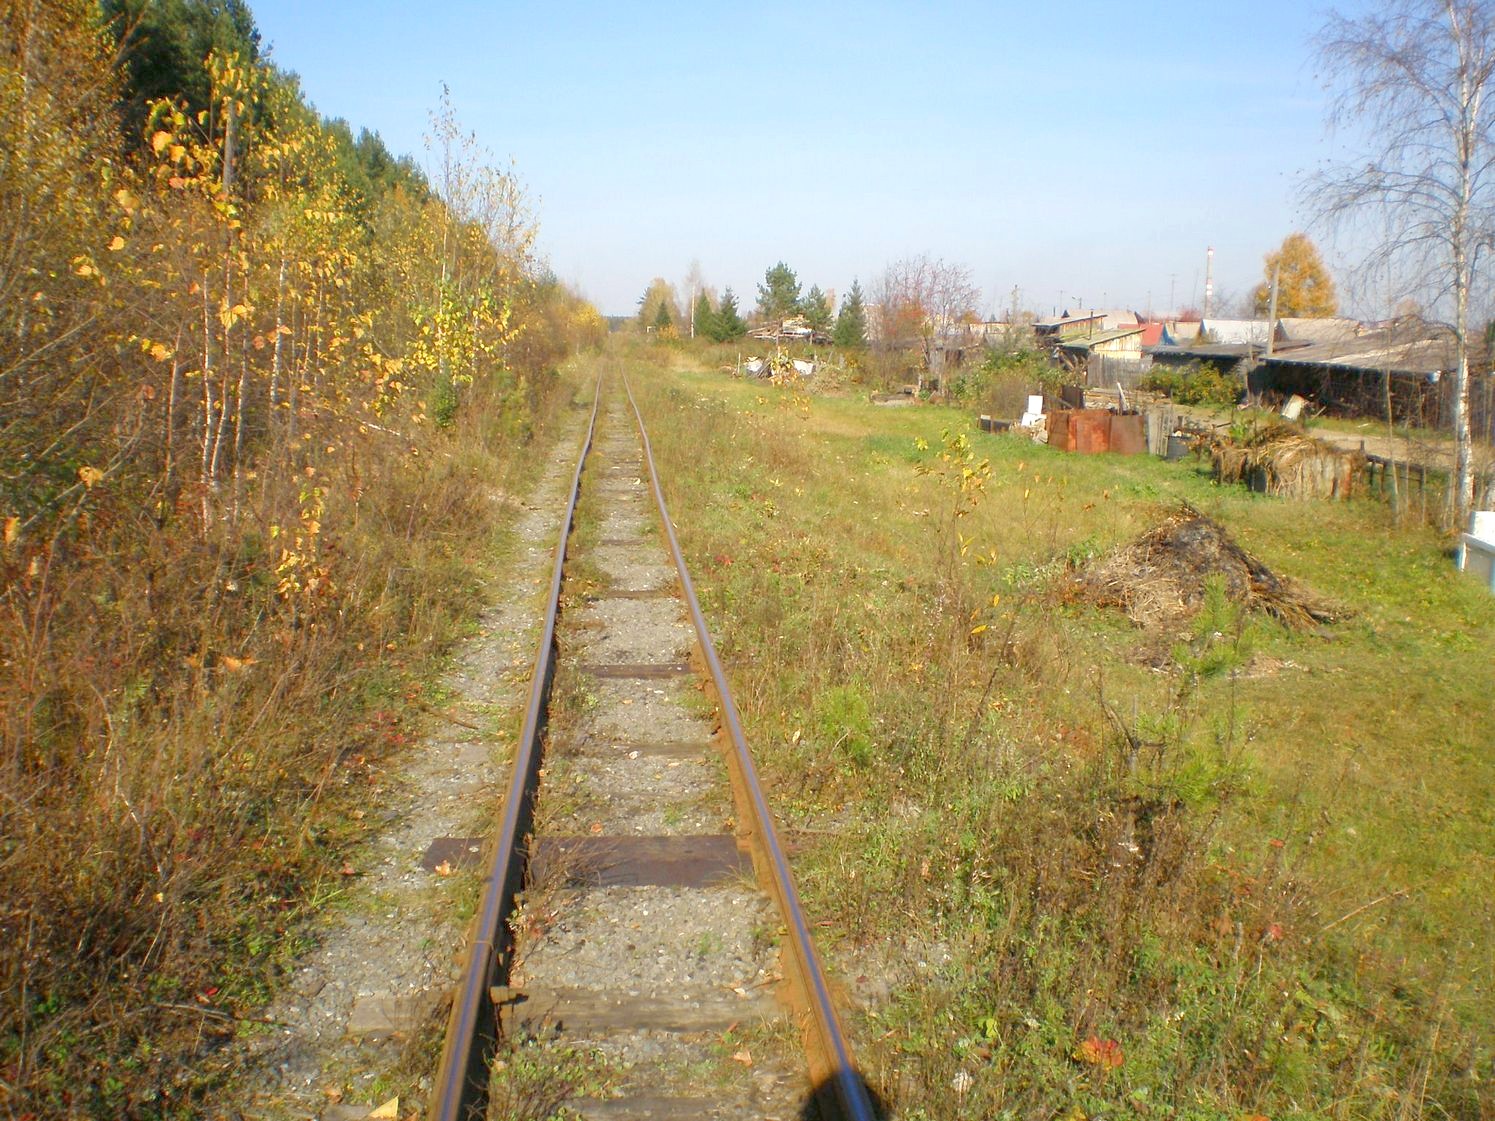 Висимо-Уткинская узкоколейная железная дорога  — фотографии, сделанные в 2007 году (часть 29)